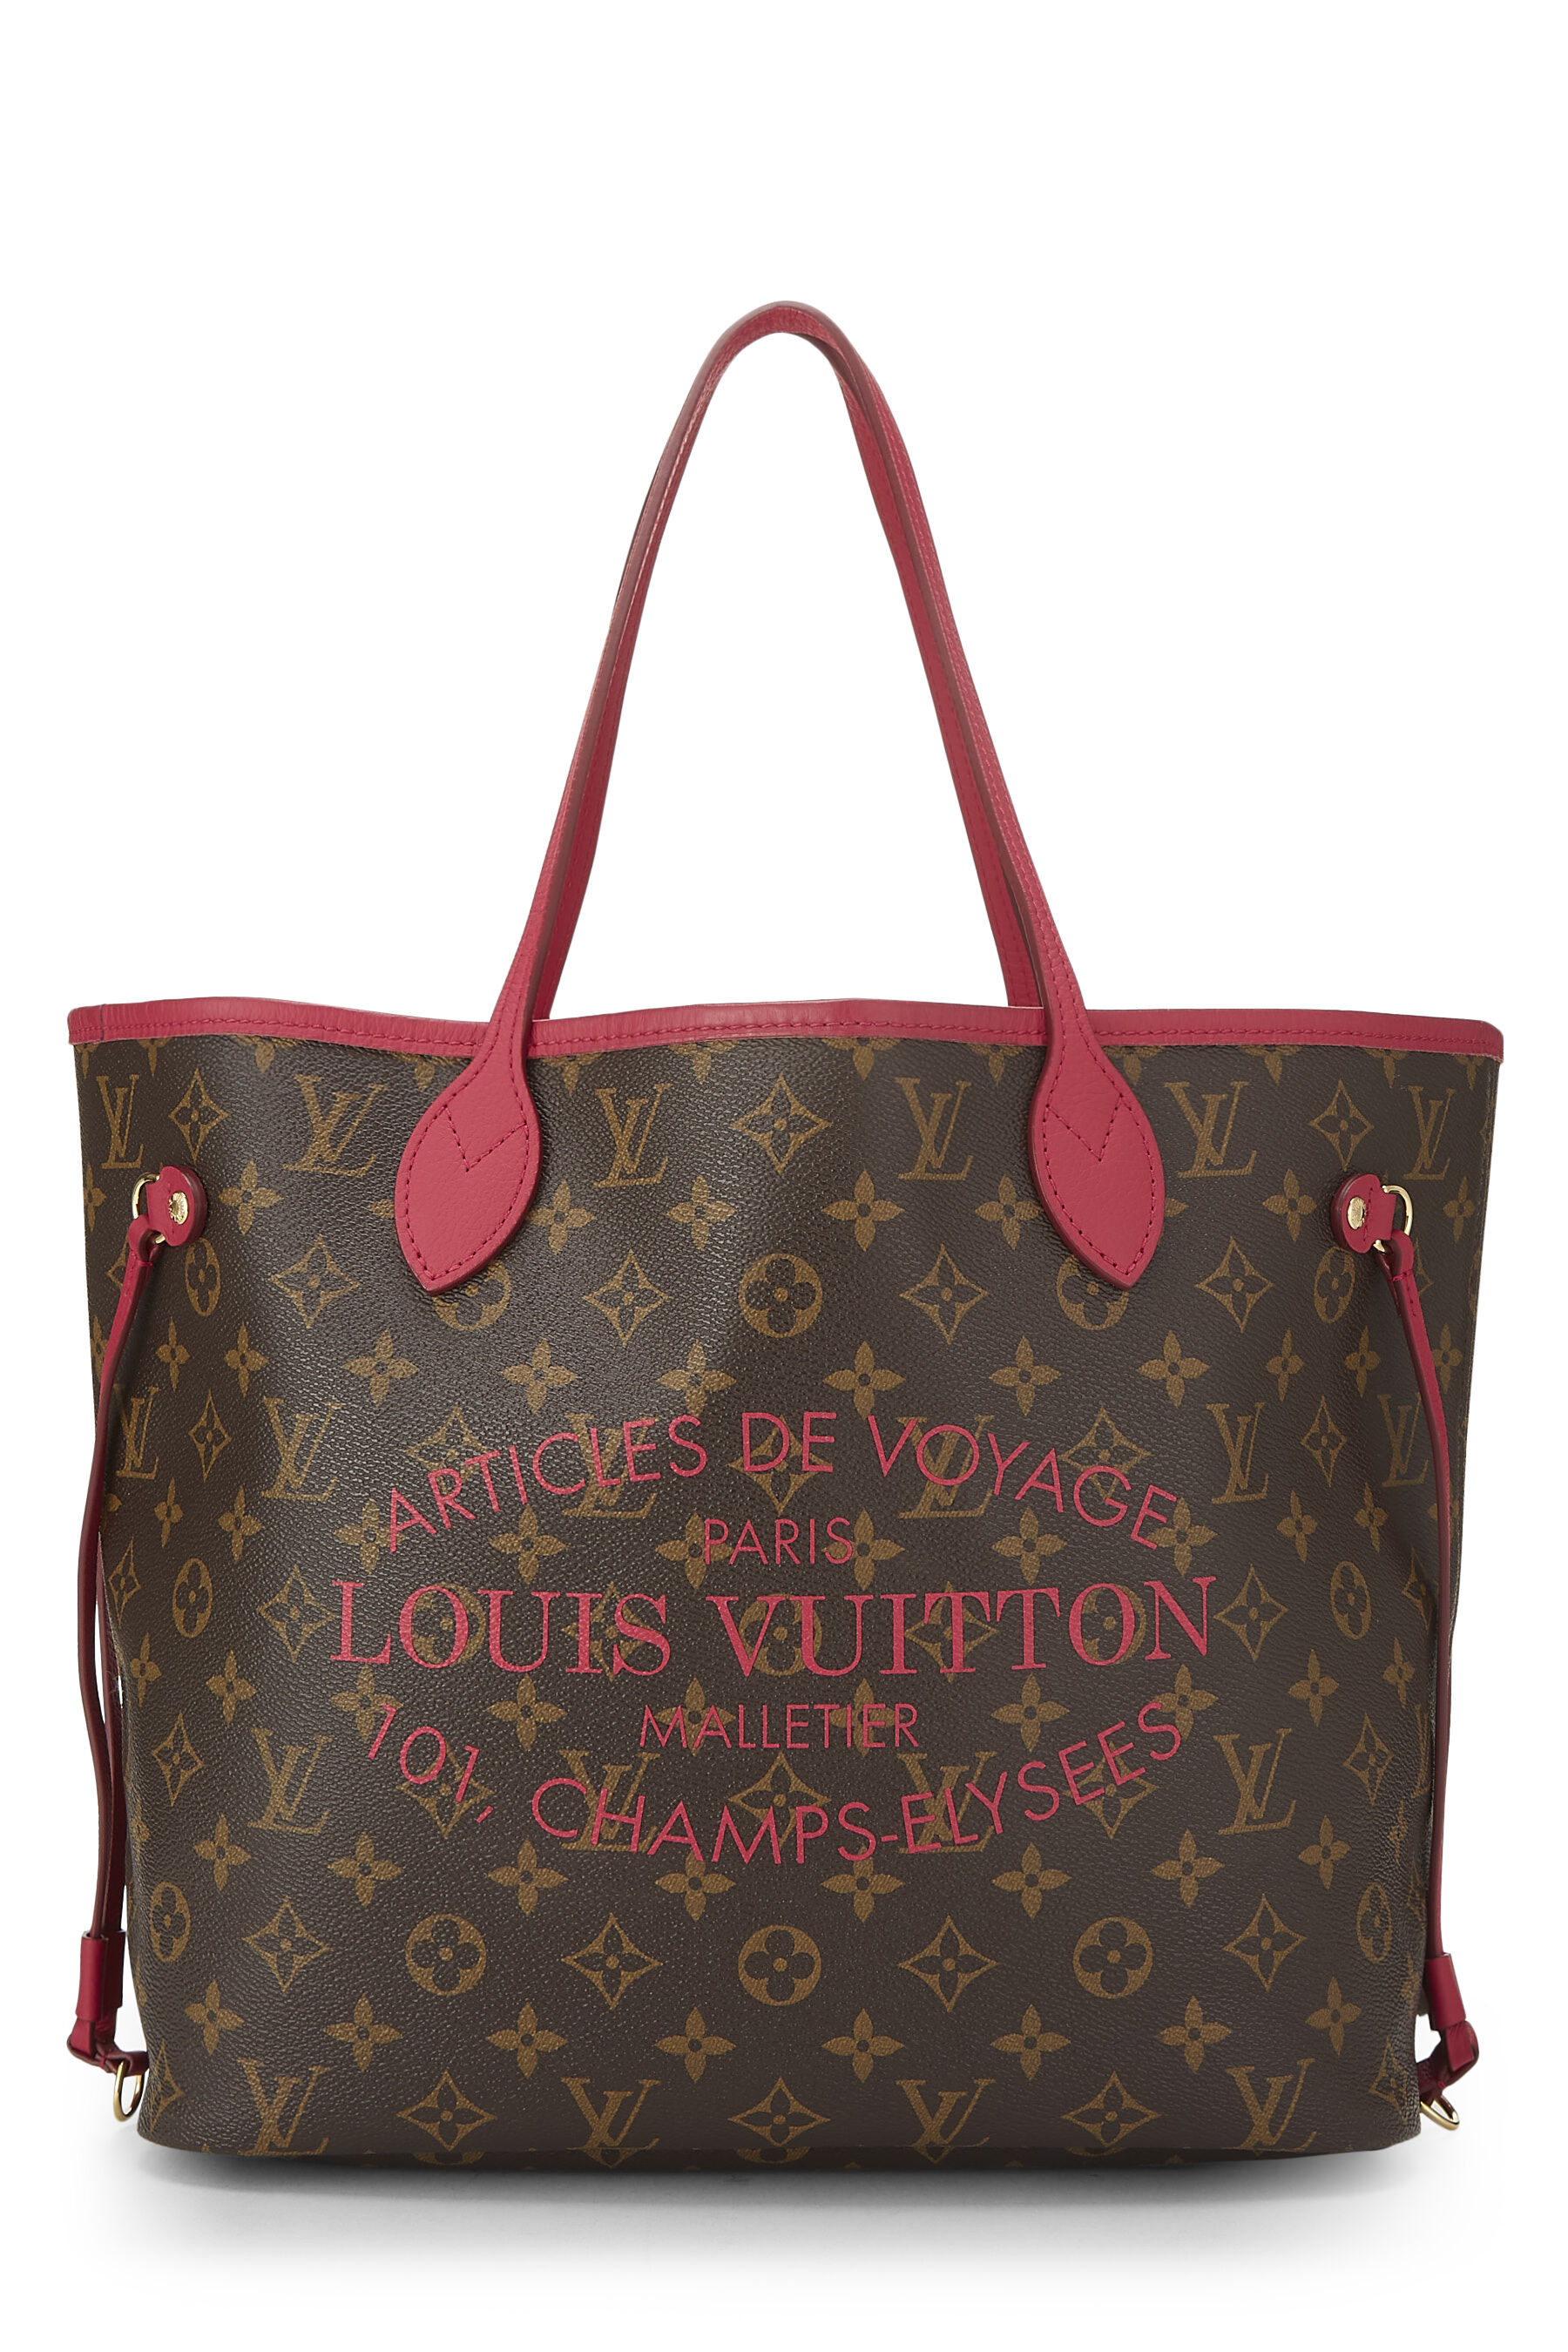 Louis Vuitton, Bags, Louis Vuitton Aricles De Voyage Tote